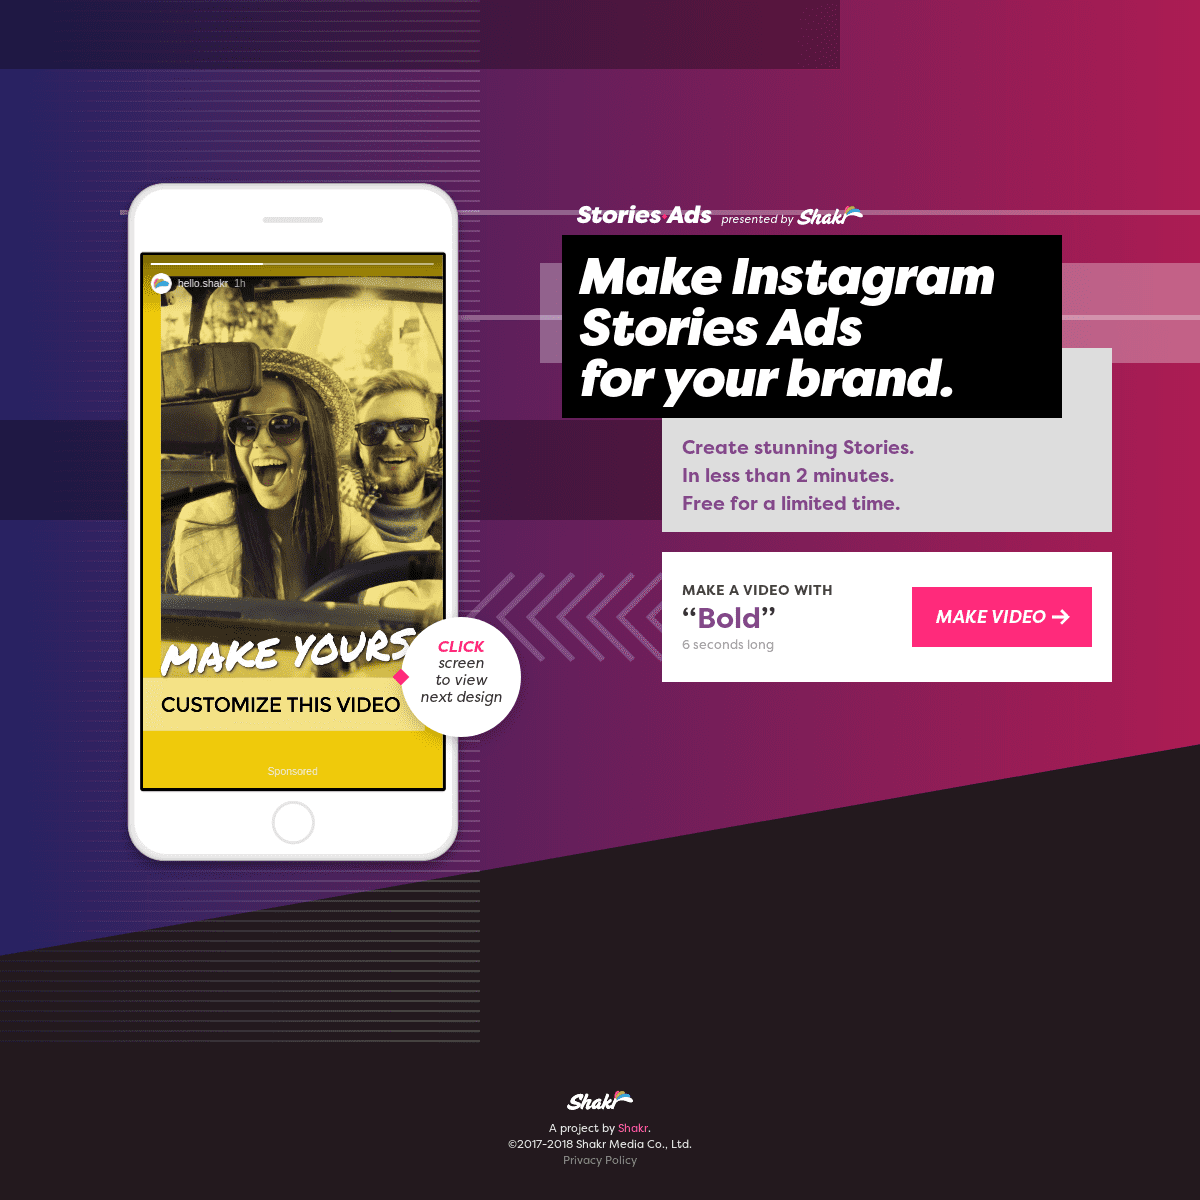 StoriesAds - Make Instagram Stories Ads